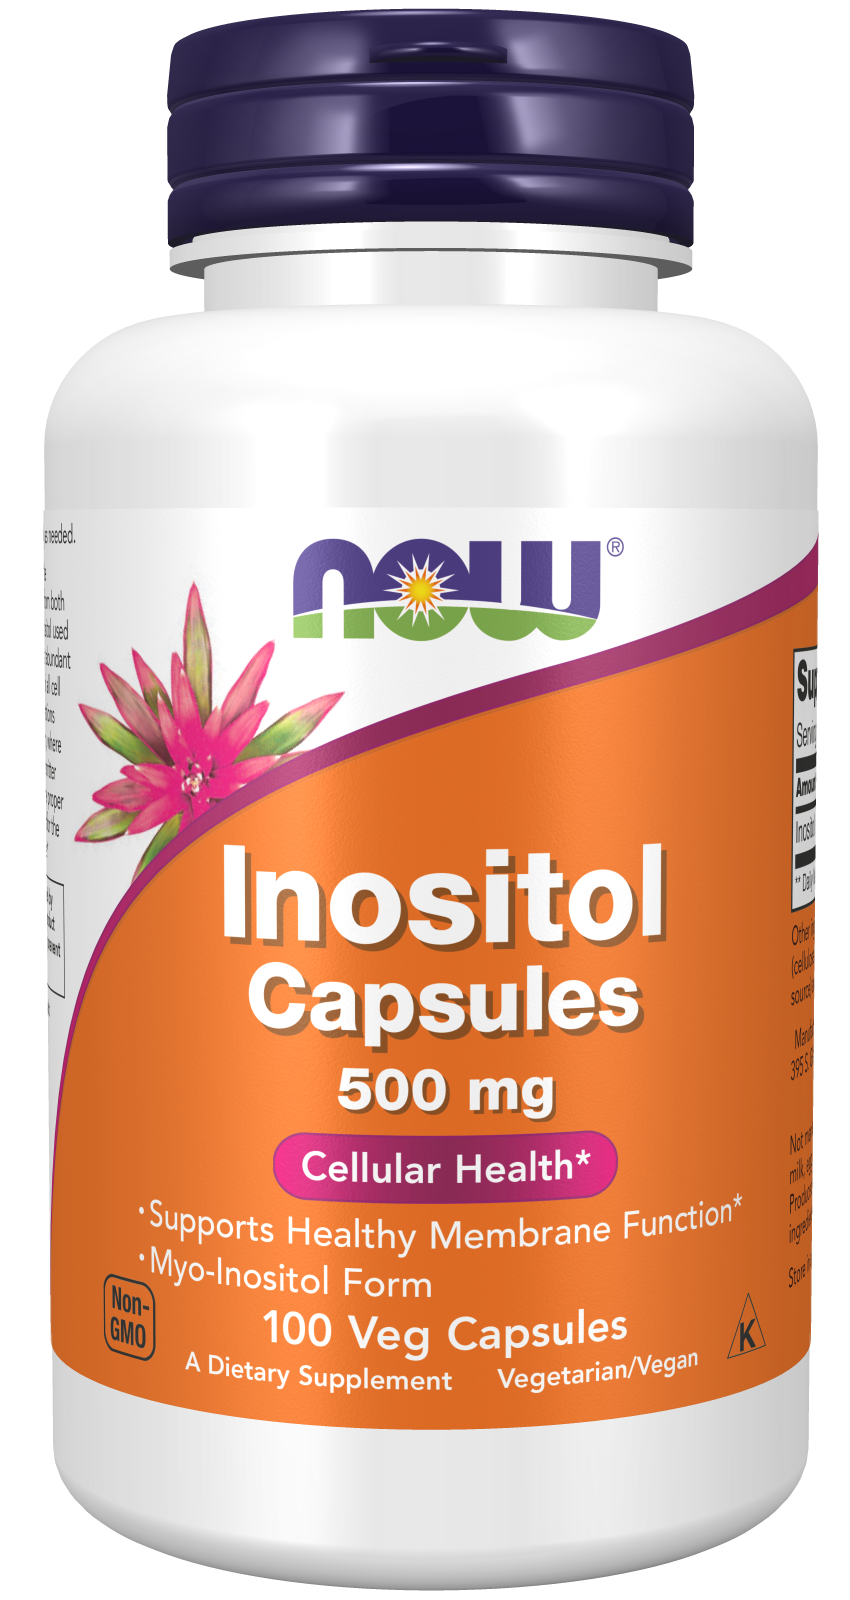 Inositol 500 mg - 100 Veg Capsules bottle front